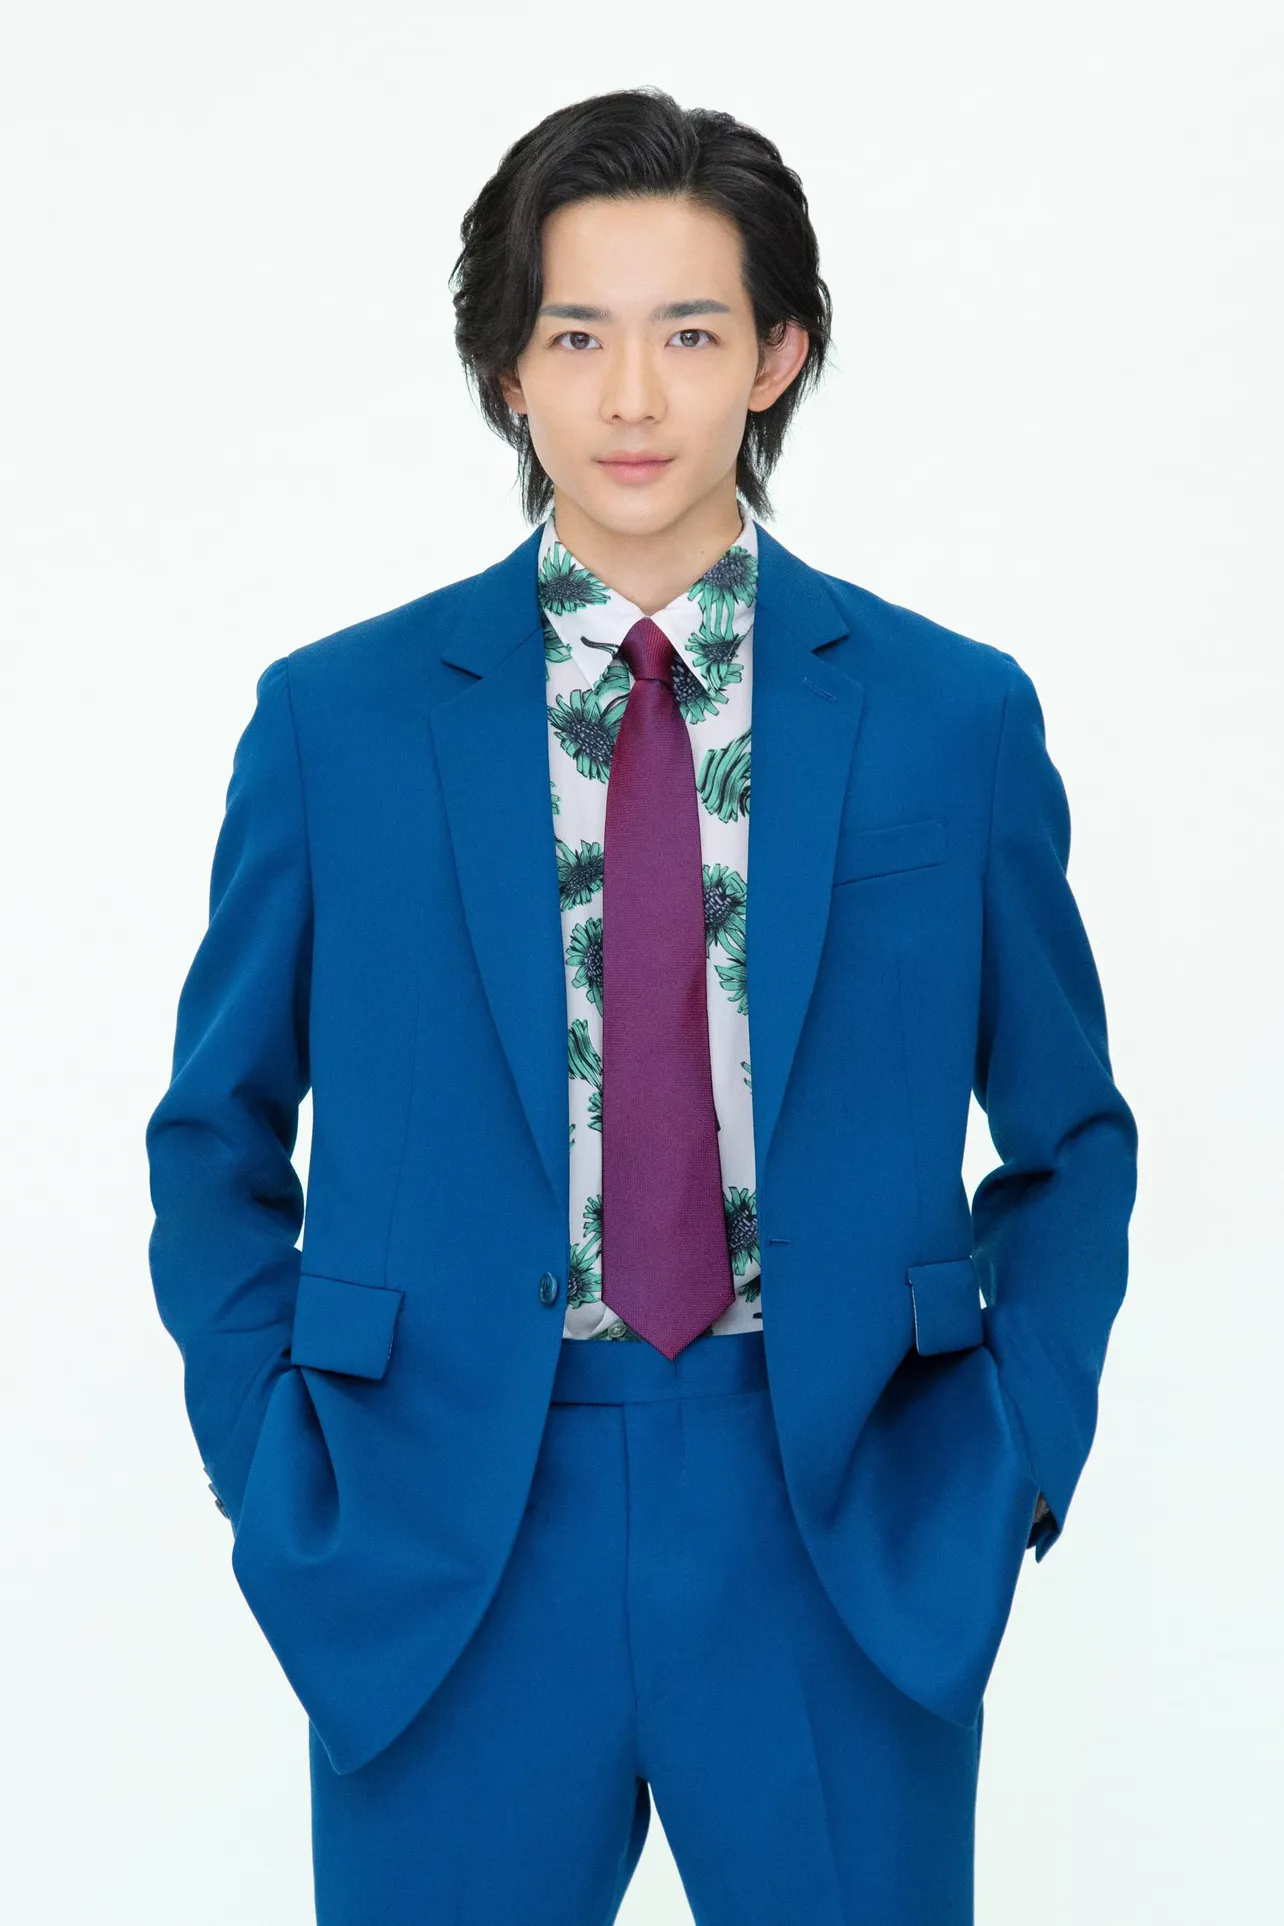 【写真】真っ青なスーツで“人間投資家”を演じる竜星涼